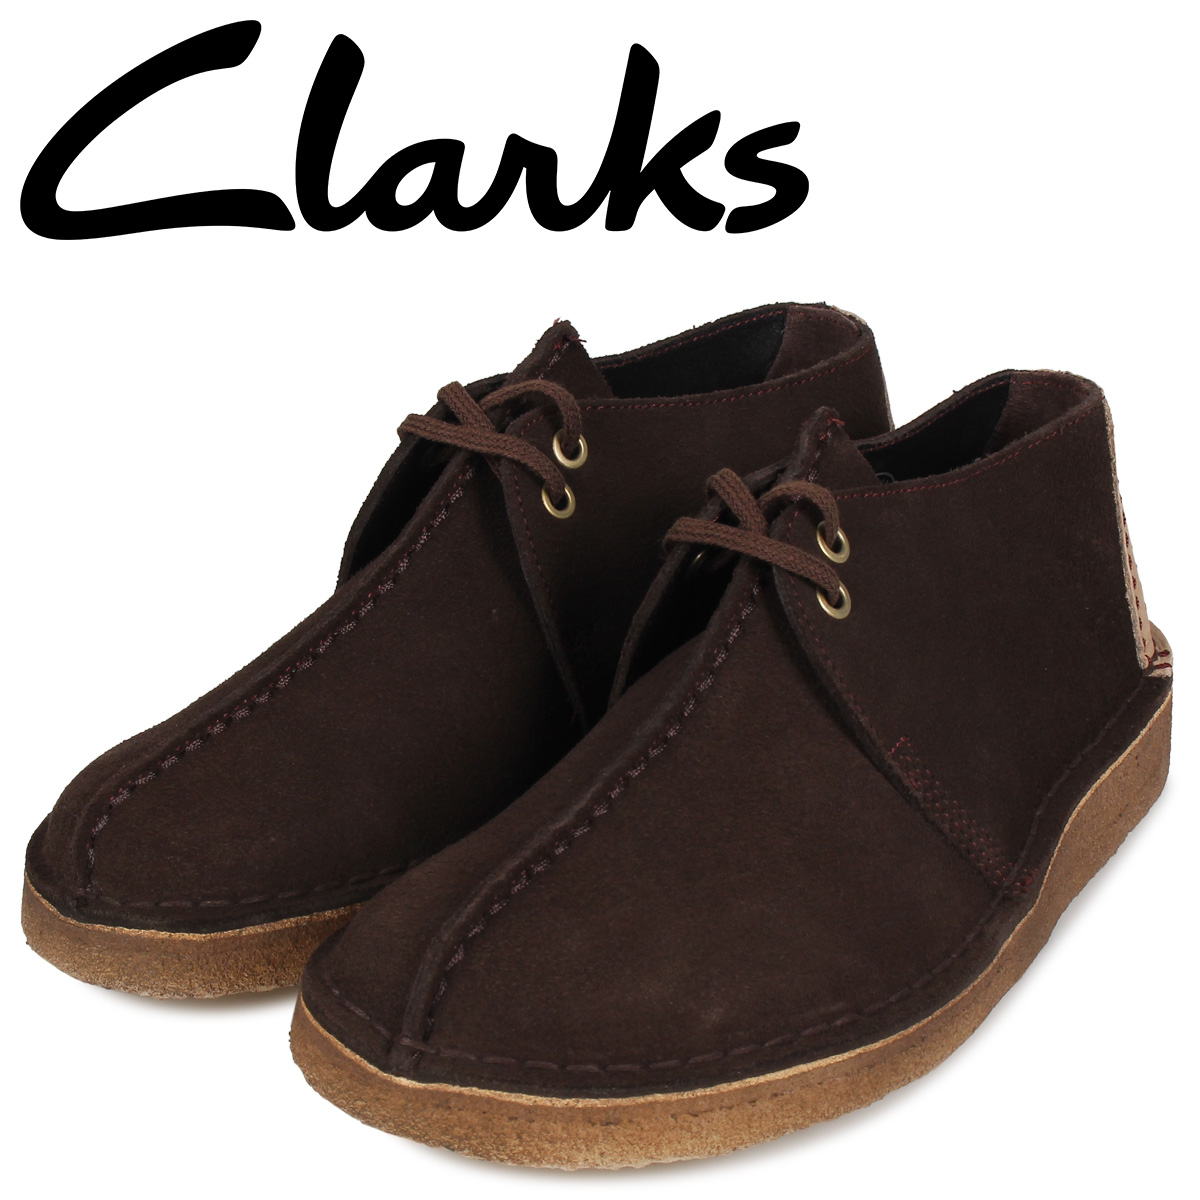 clarks trek boots